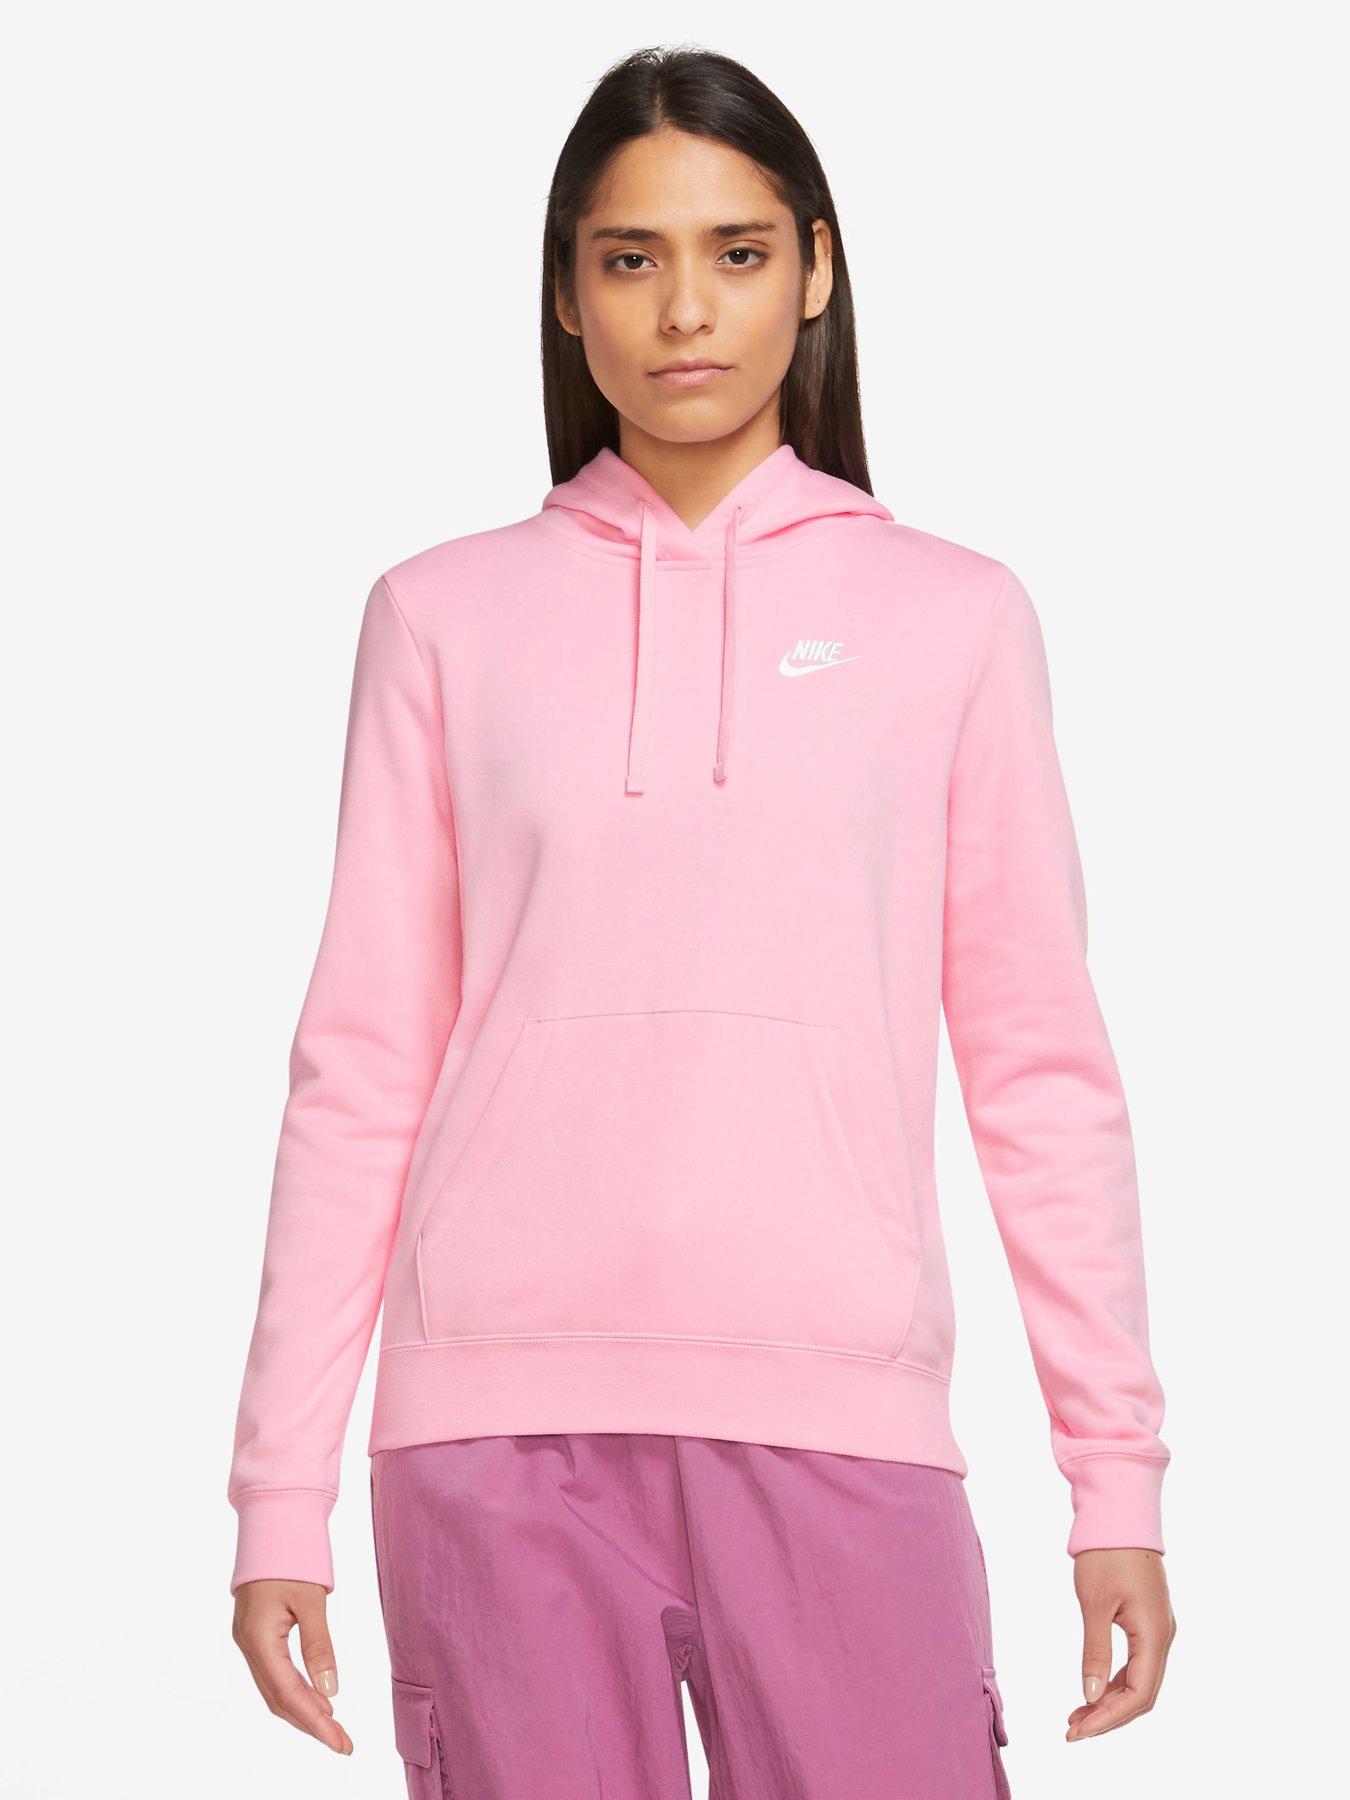 Women's Nike Sportswear Club Fleece Pullover Hoodie| Finish, 47% OFF